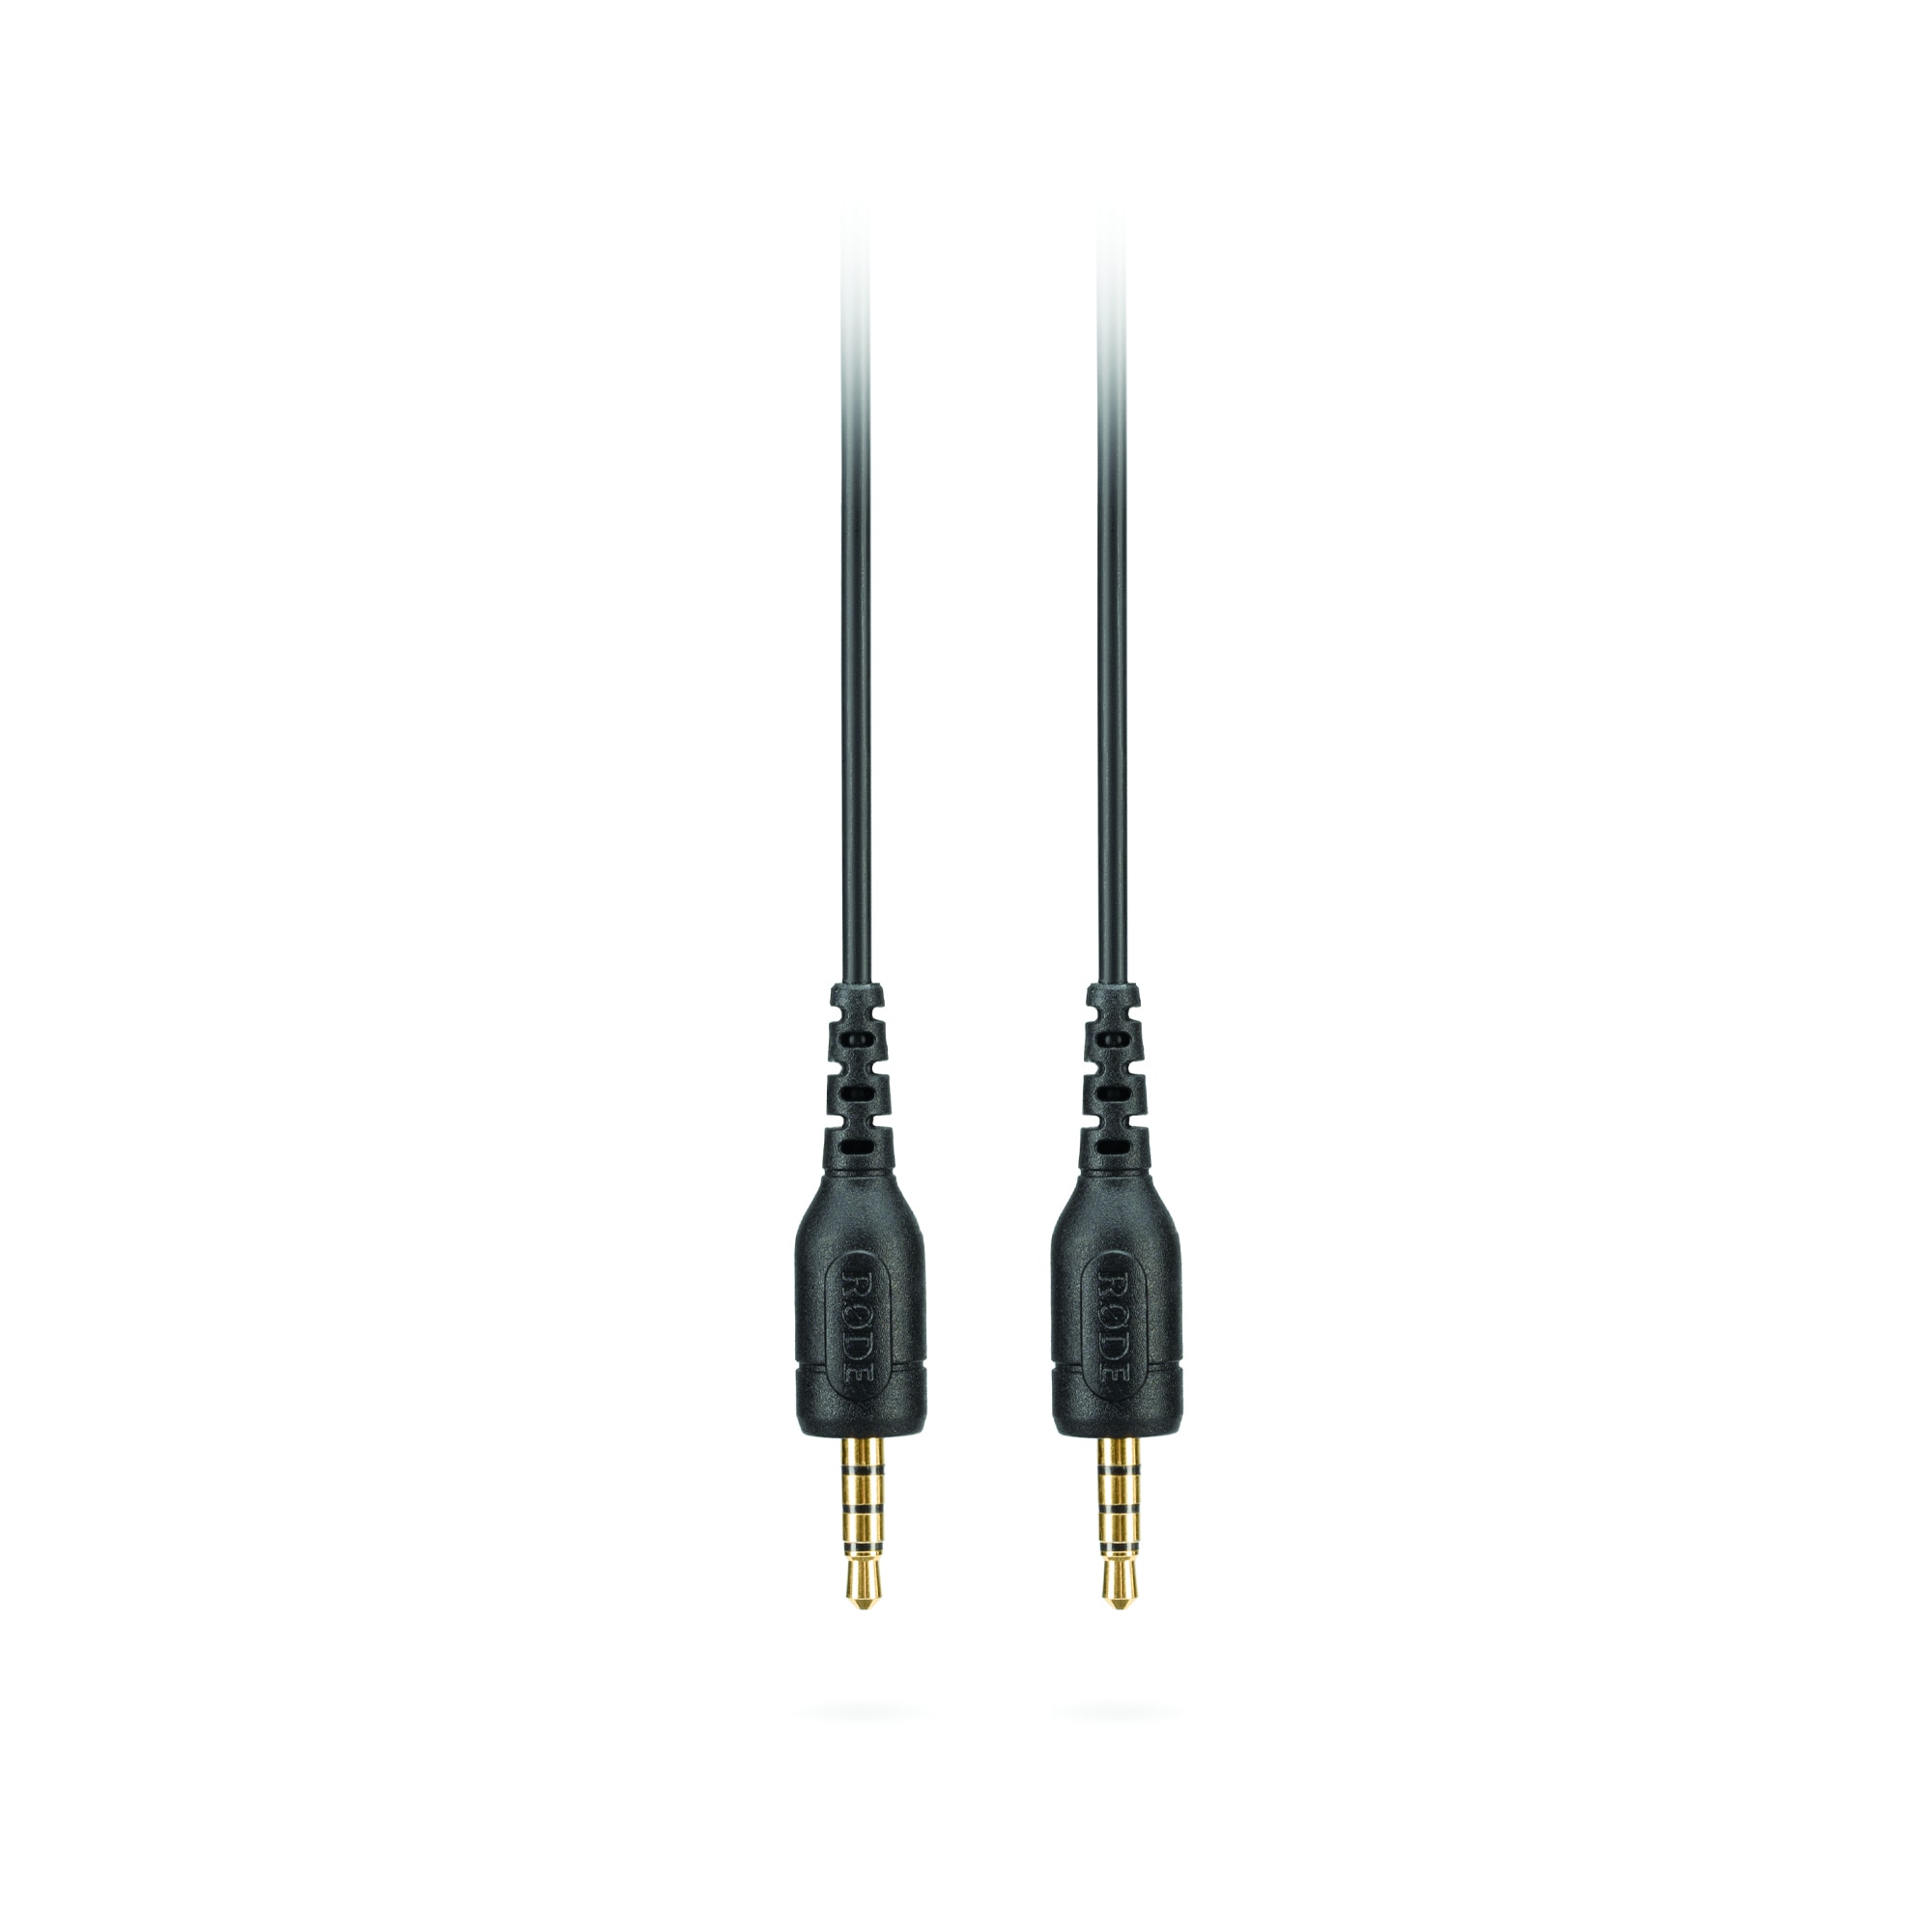 Röde SC9 kabel 3.5mm TRRS/TRRS hane/hane 1,5m